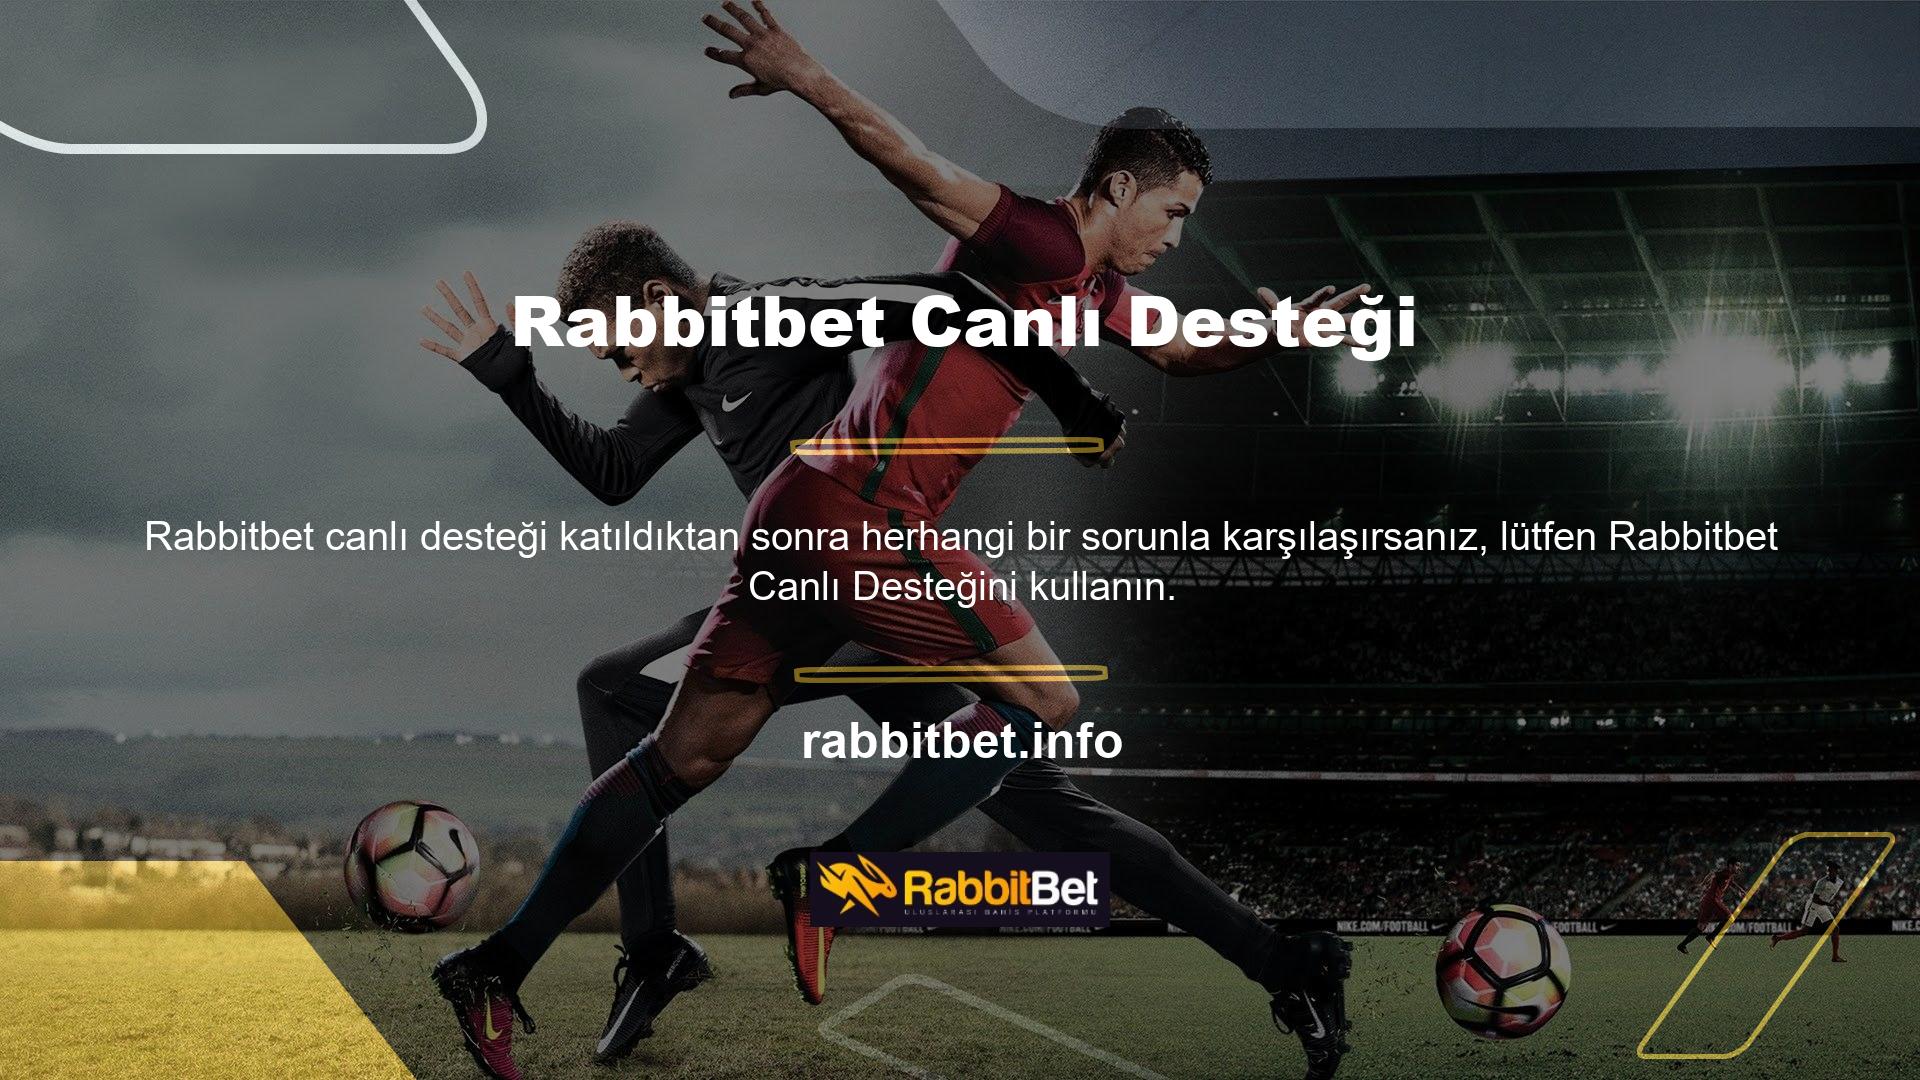 Rabbitbet canlı destek müşteri hizmetleri 7/24 destek konseptine dayanmaktadır